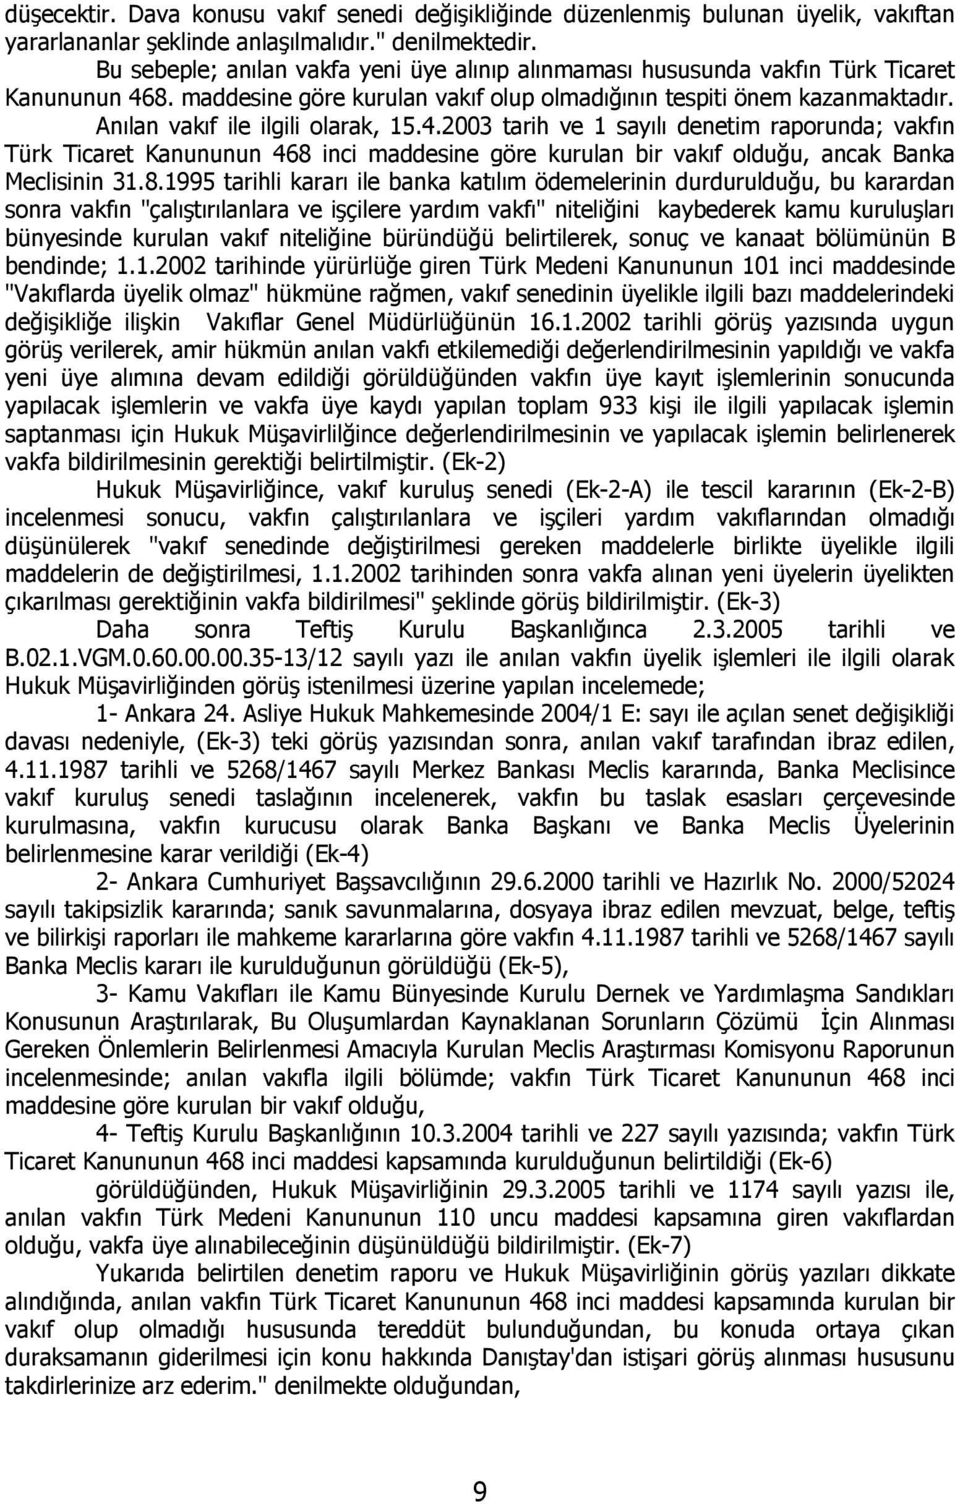 Anılan vakıf ile ilgili olarak, 15.4.2003 tarih ve 1 sayılı denetim raporunda; vakfın Türk Ticaret Kanununun 468 